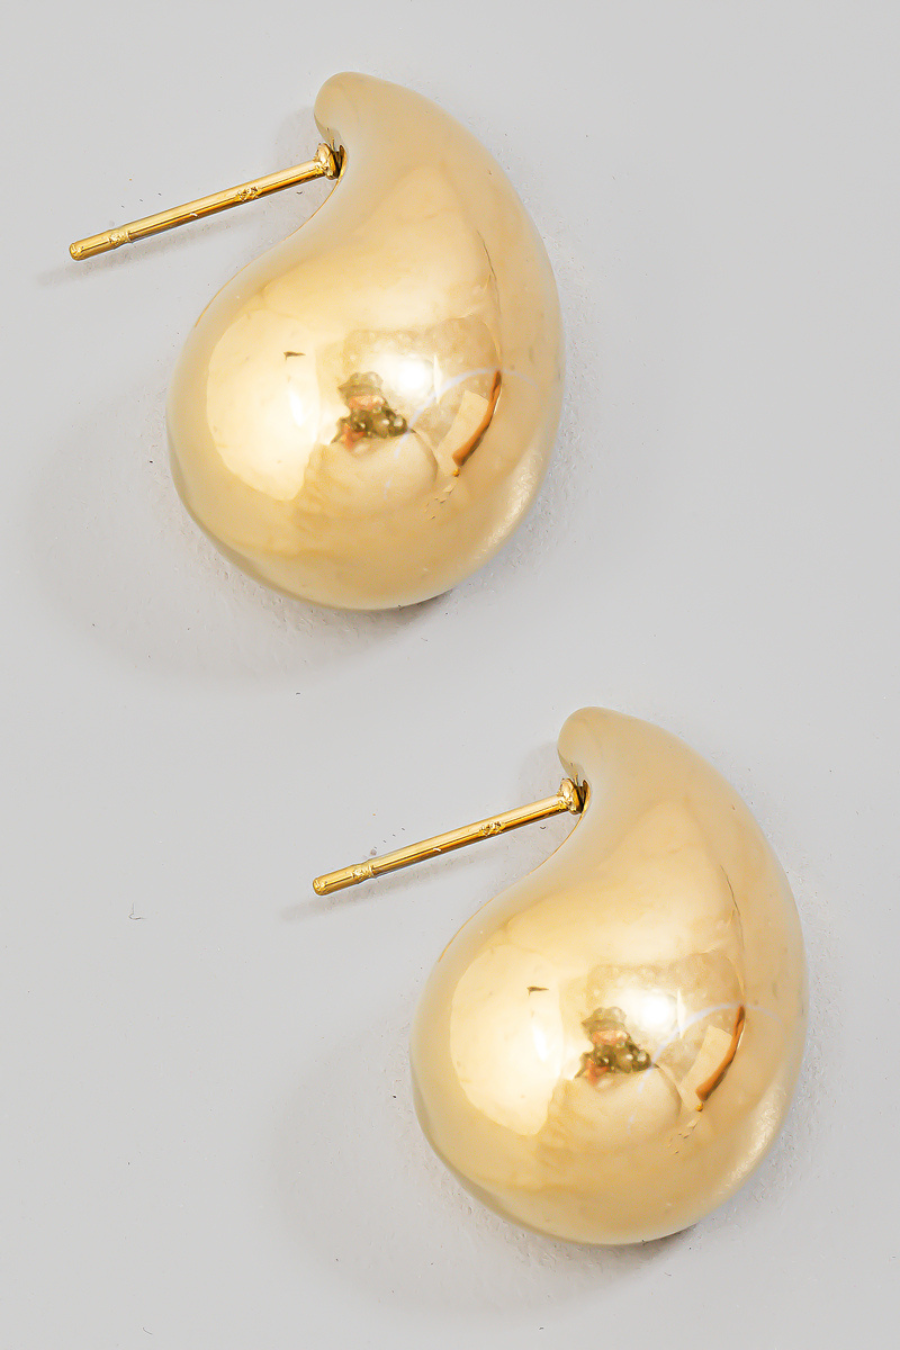 gold teardrop earrings, as a flat lay